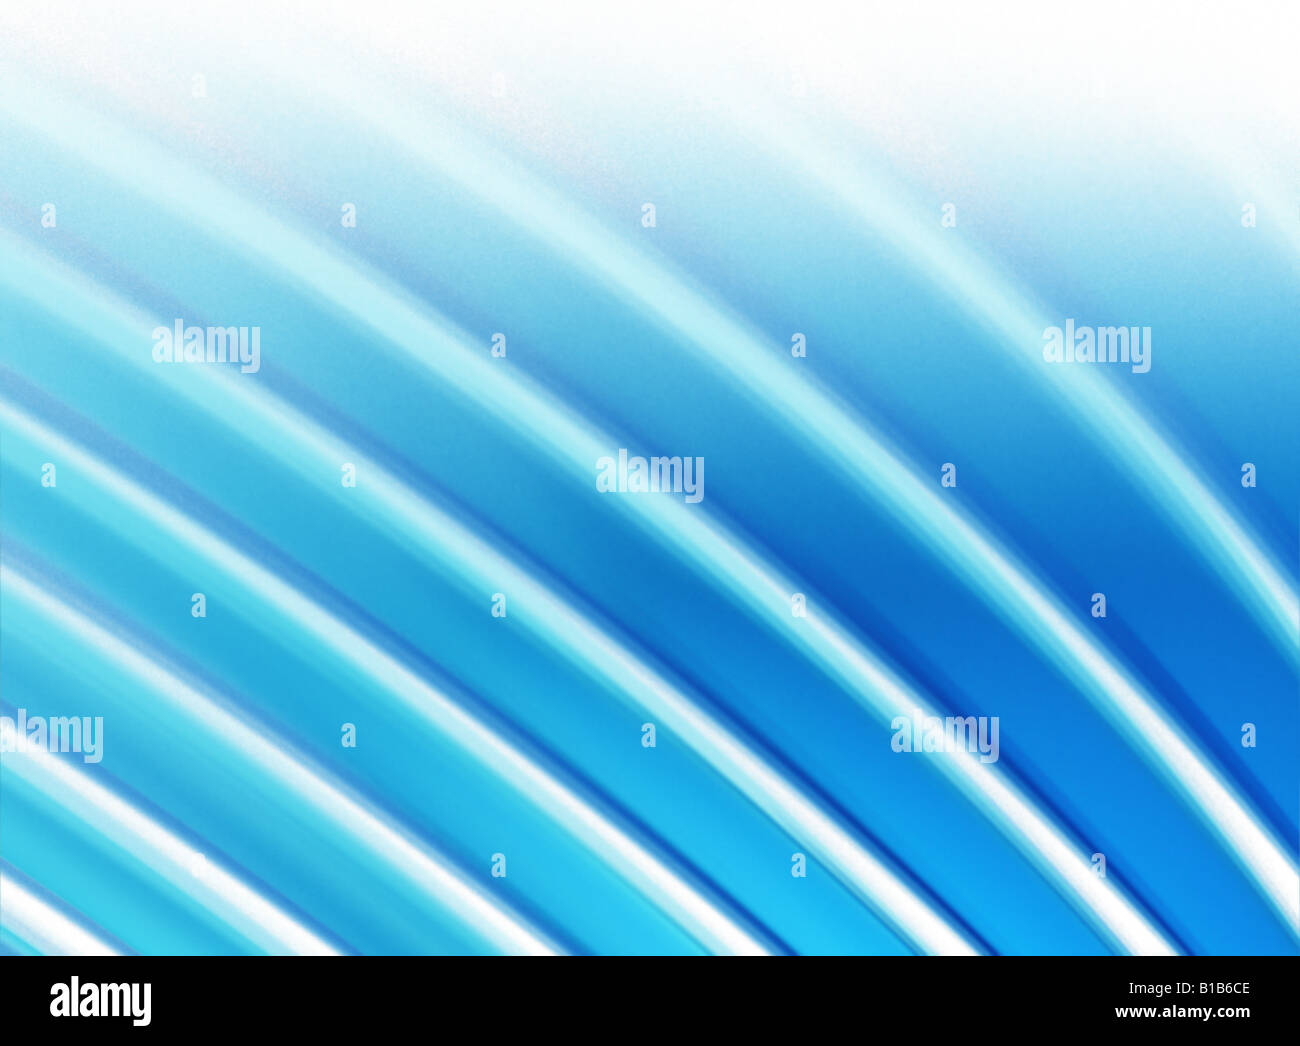 Fraktale Hintergrund des blauen wellenförmigen Streifen Stockfoto